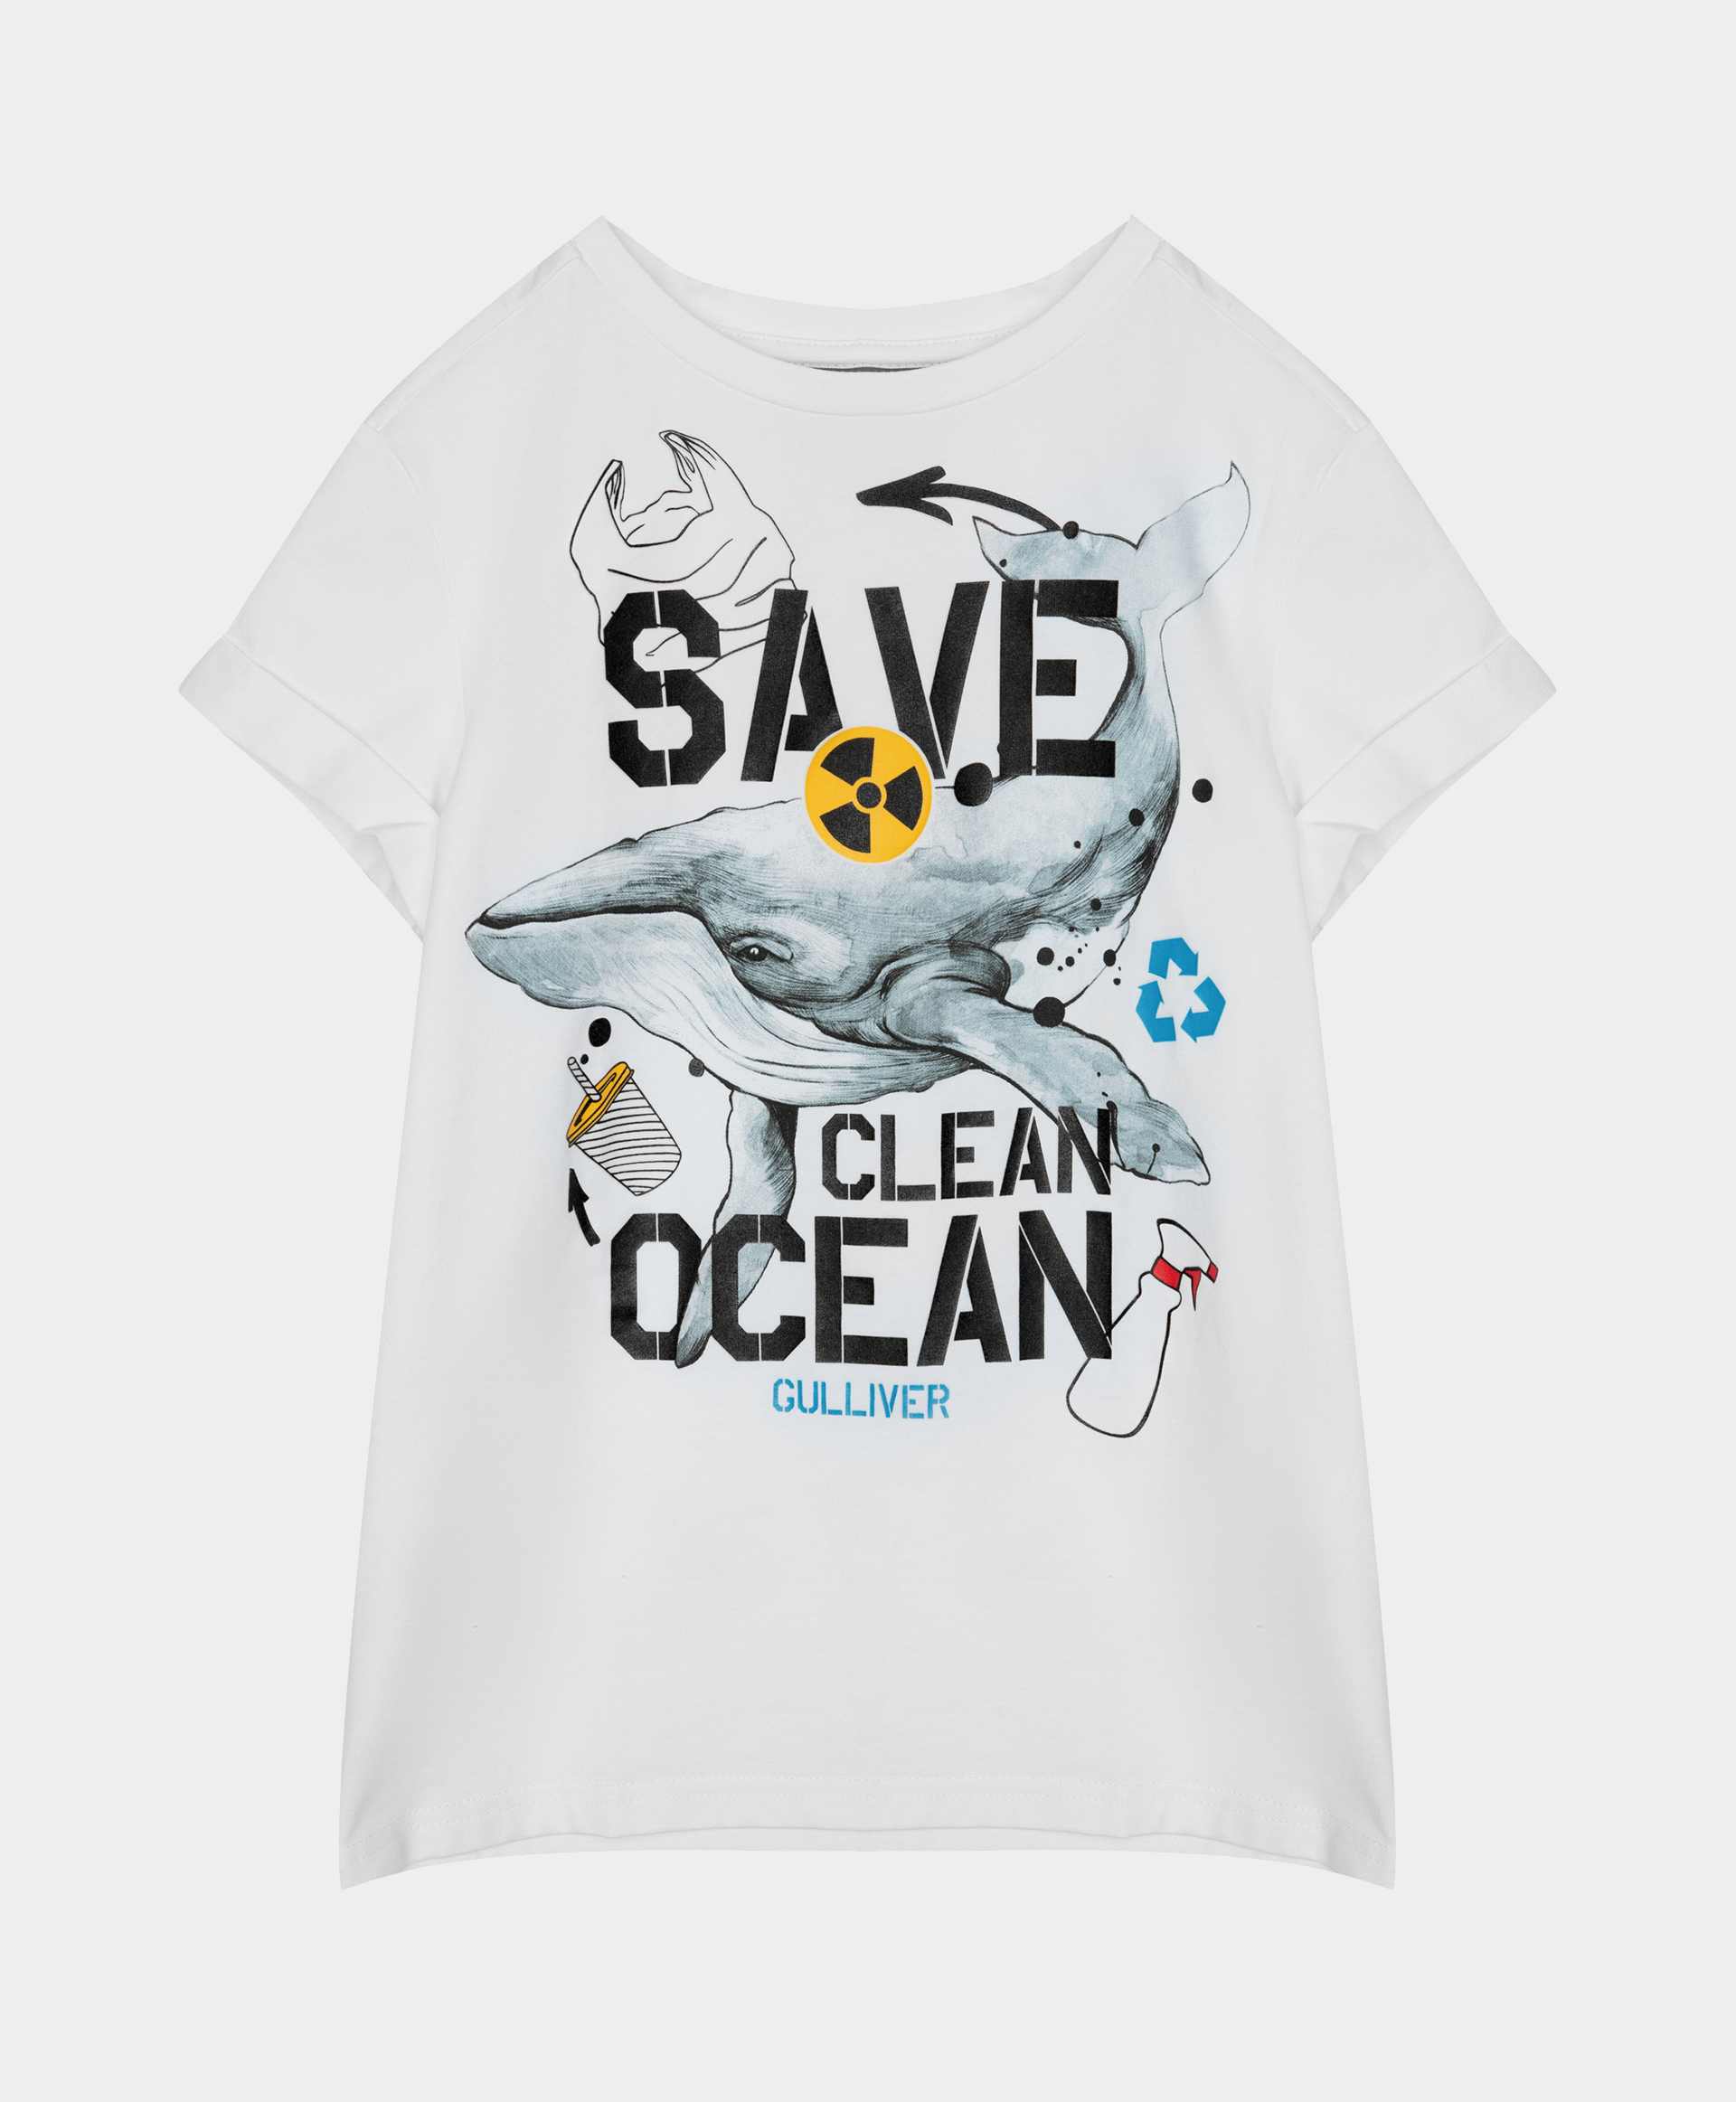 Футболка Save Clean Ocean для мальчика Gulliver 120FBJC1203, размер 140, цвет белый - фото 3